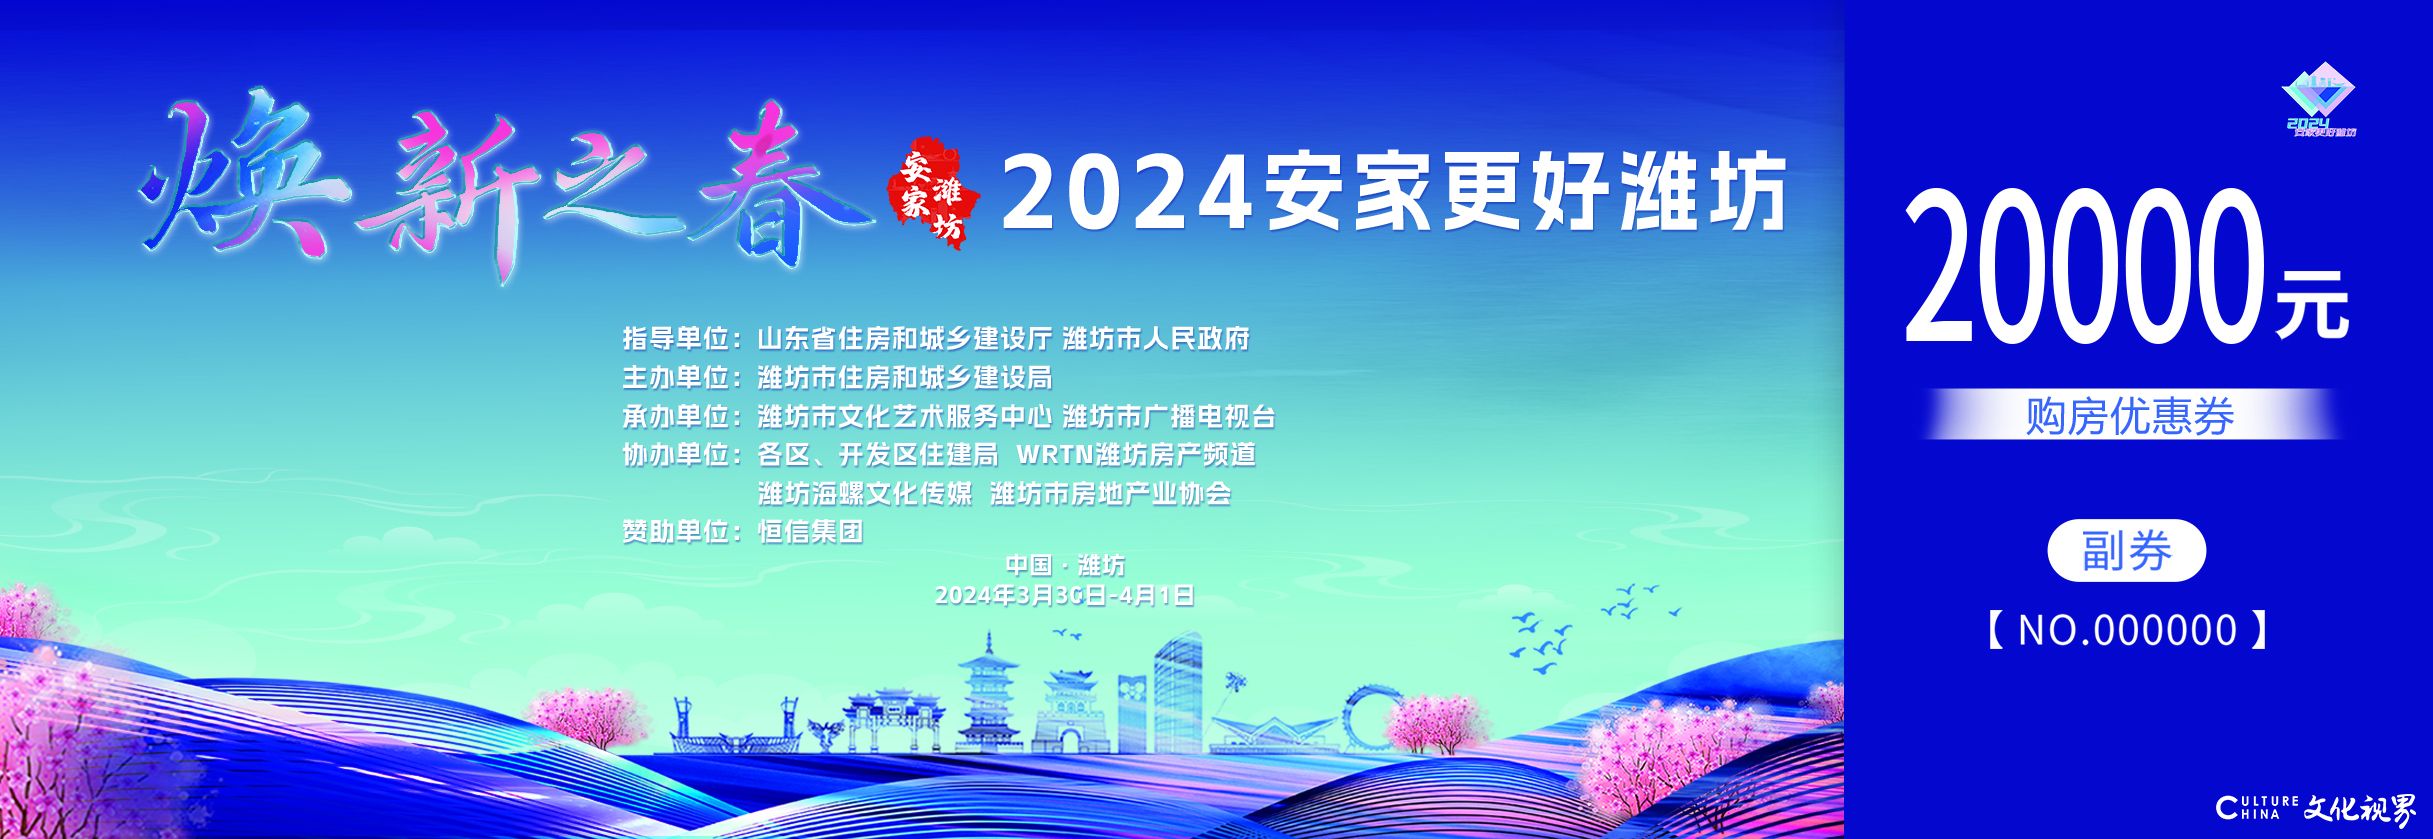 2024潍坊春季房展会本周六隆重开幕！恒信集团专栏开启